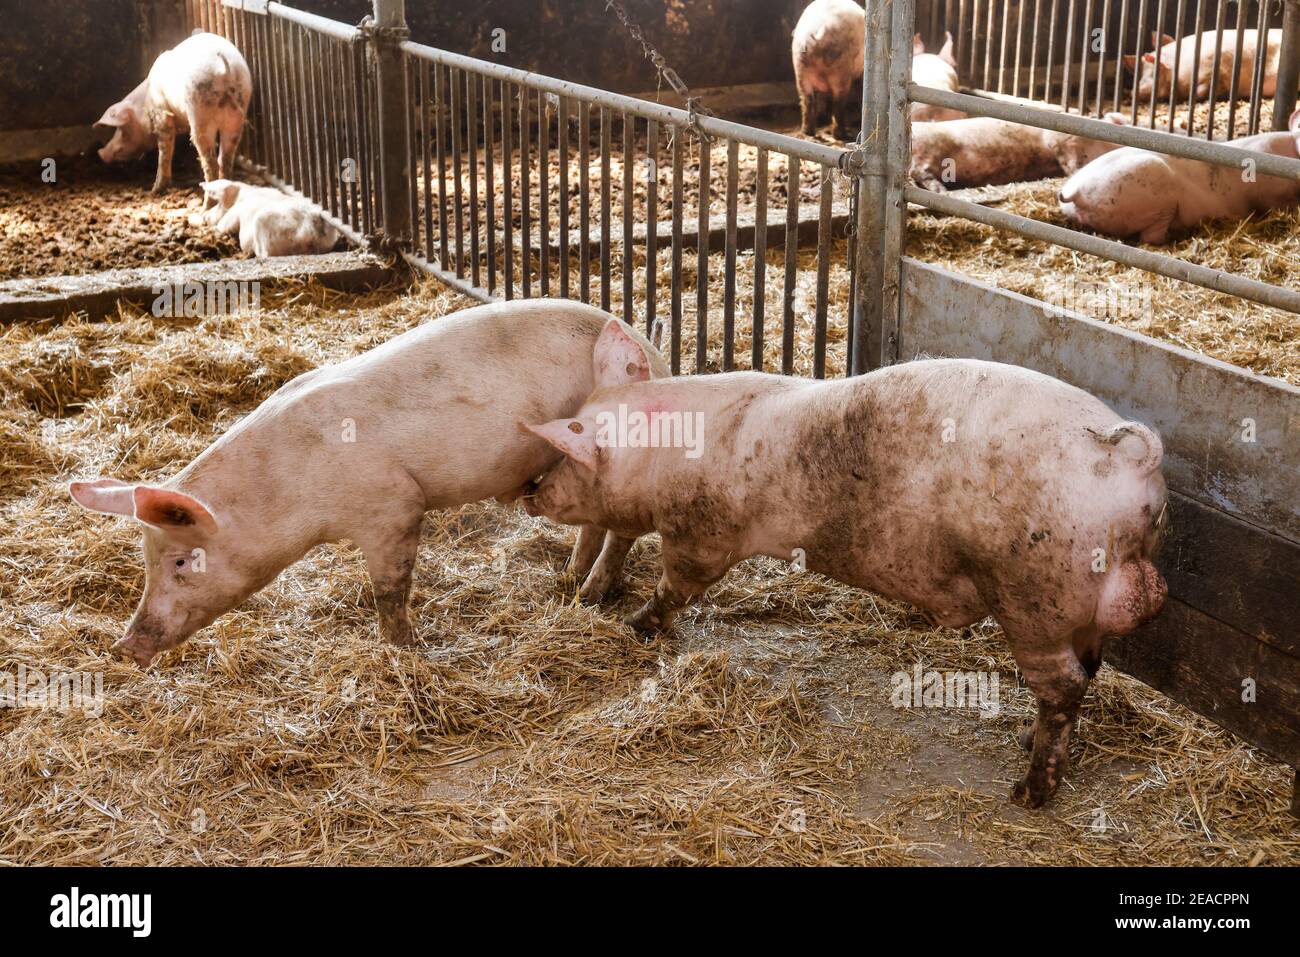 Oberlausitz, Sachsen, Deutschland - Bio-Schweine in der Scheune werden die Tiere auf Stroh in artgerechter Weise auf diesem Hof gehalten, mit großzügiger Fläche über den Bio-Normen und gefüttert mit selbst produziertem hauseigenem Futter, nachdem sie gegessen haben, dürfen die Schweine wieder nach draußen gehen. Stockfoto